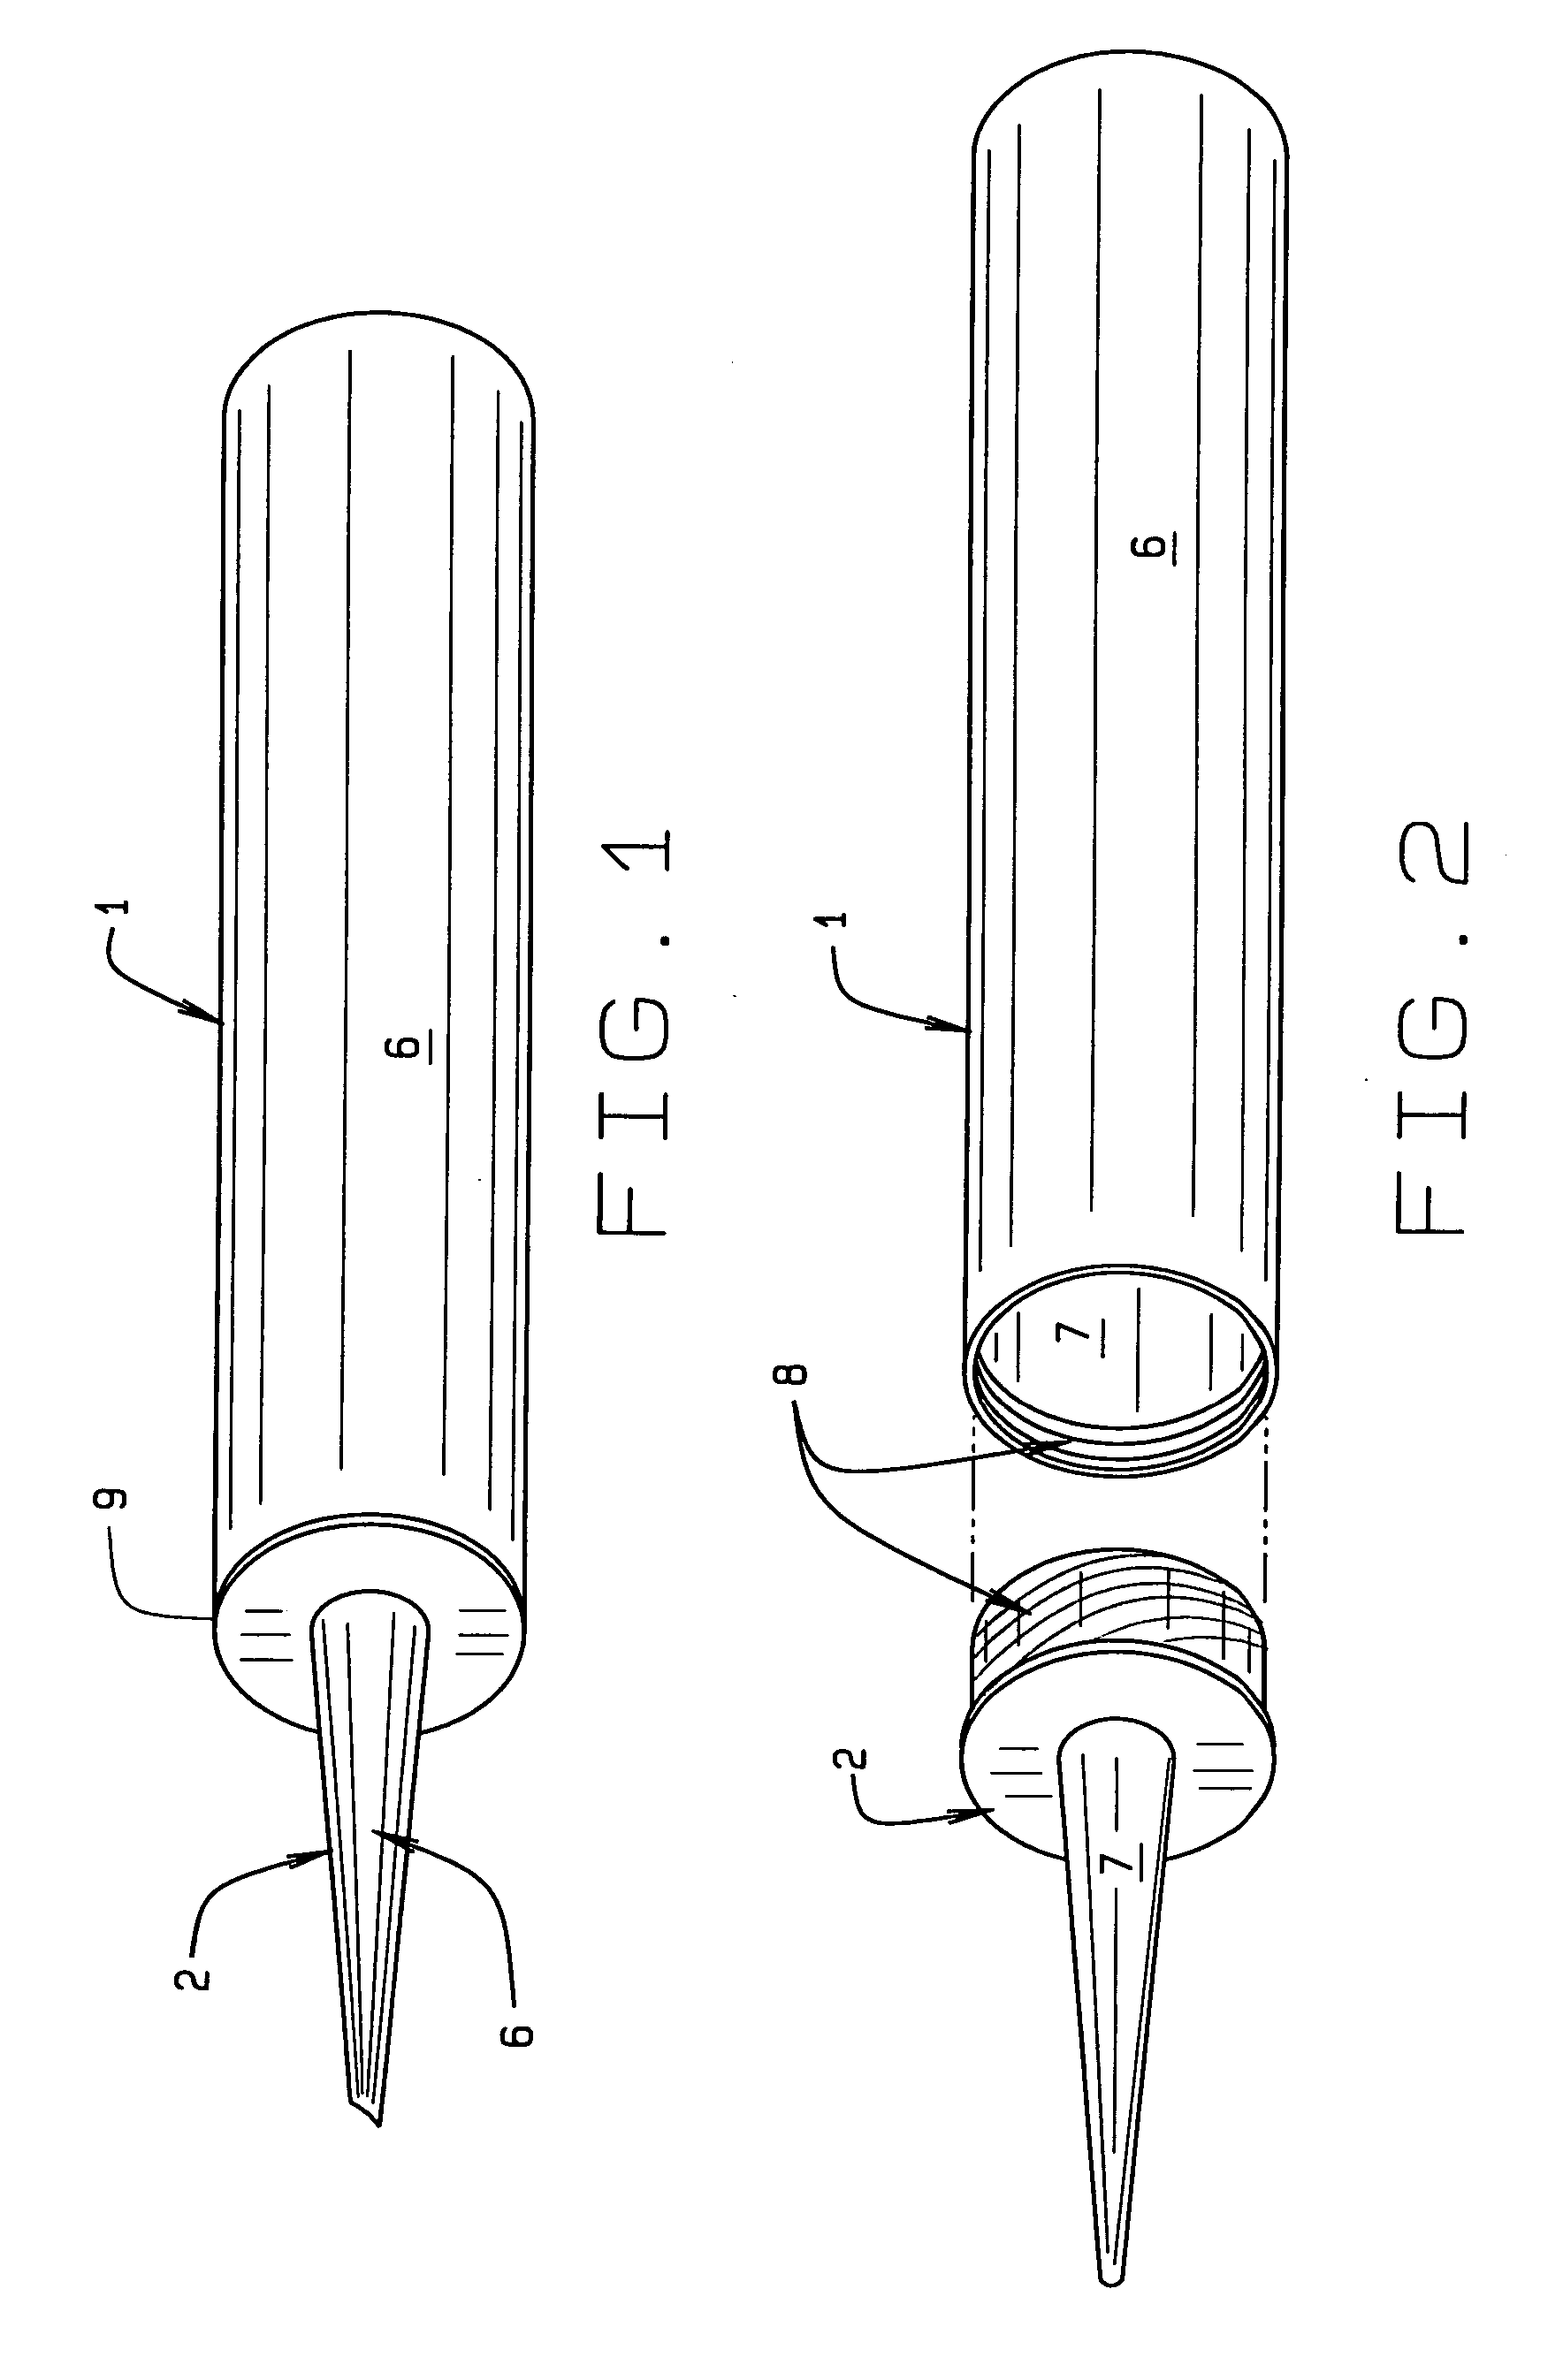 Fastener engaging caulking tube nozzle